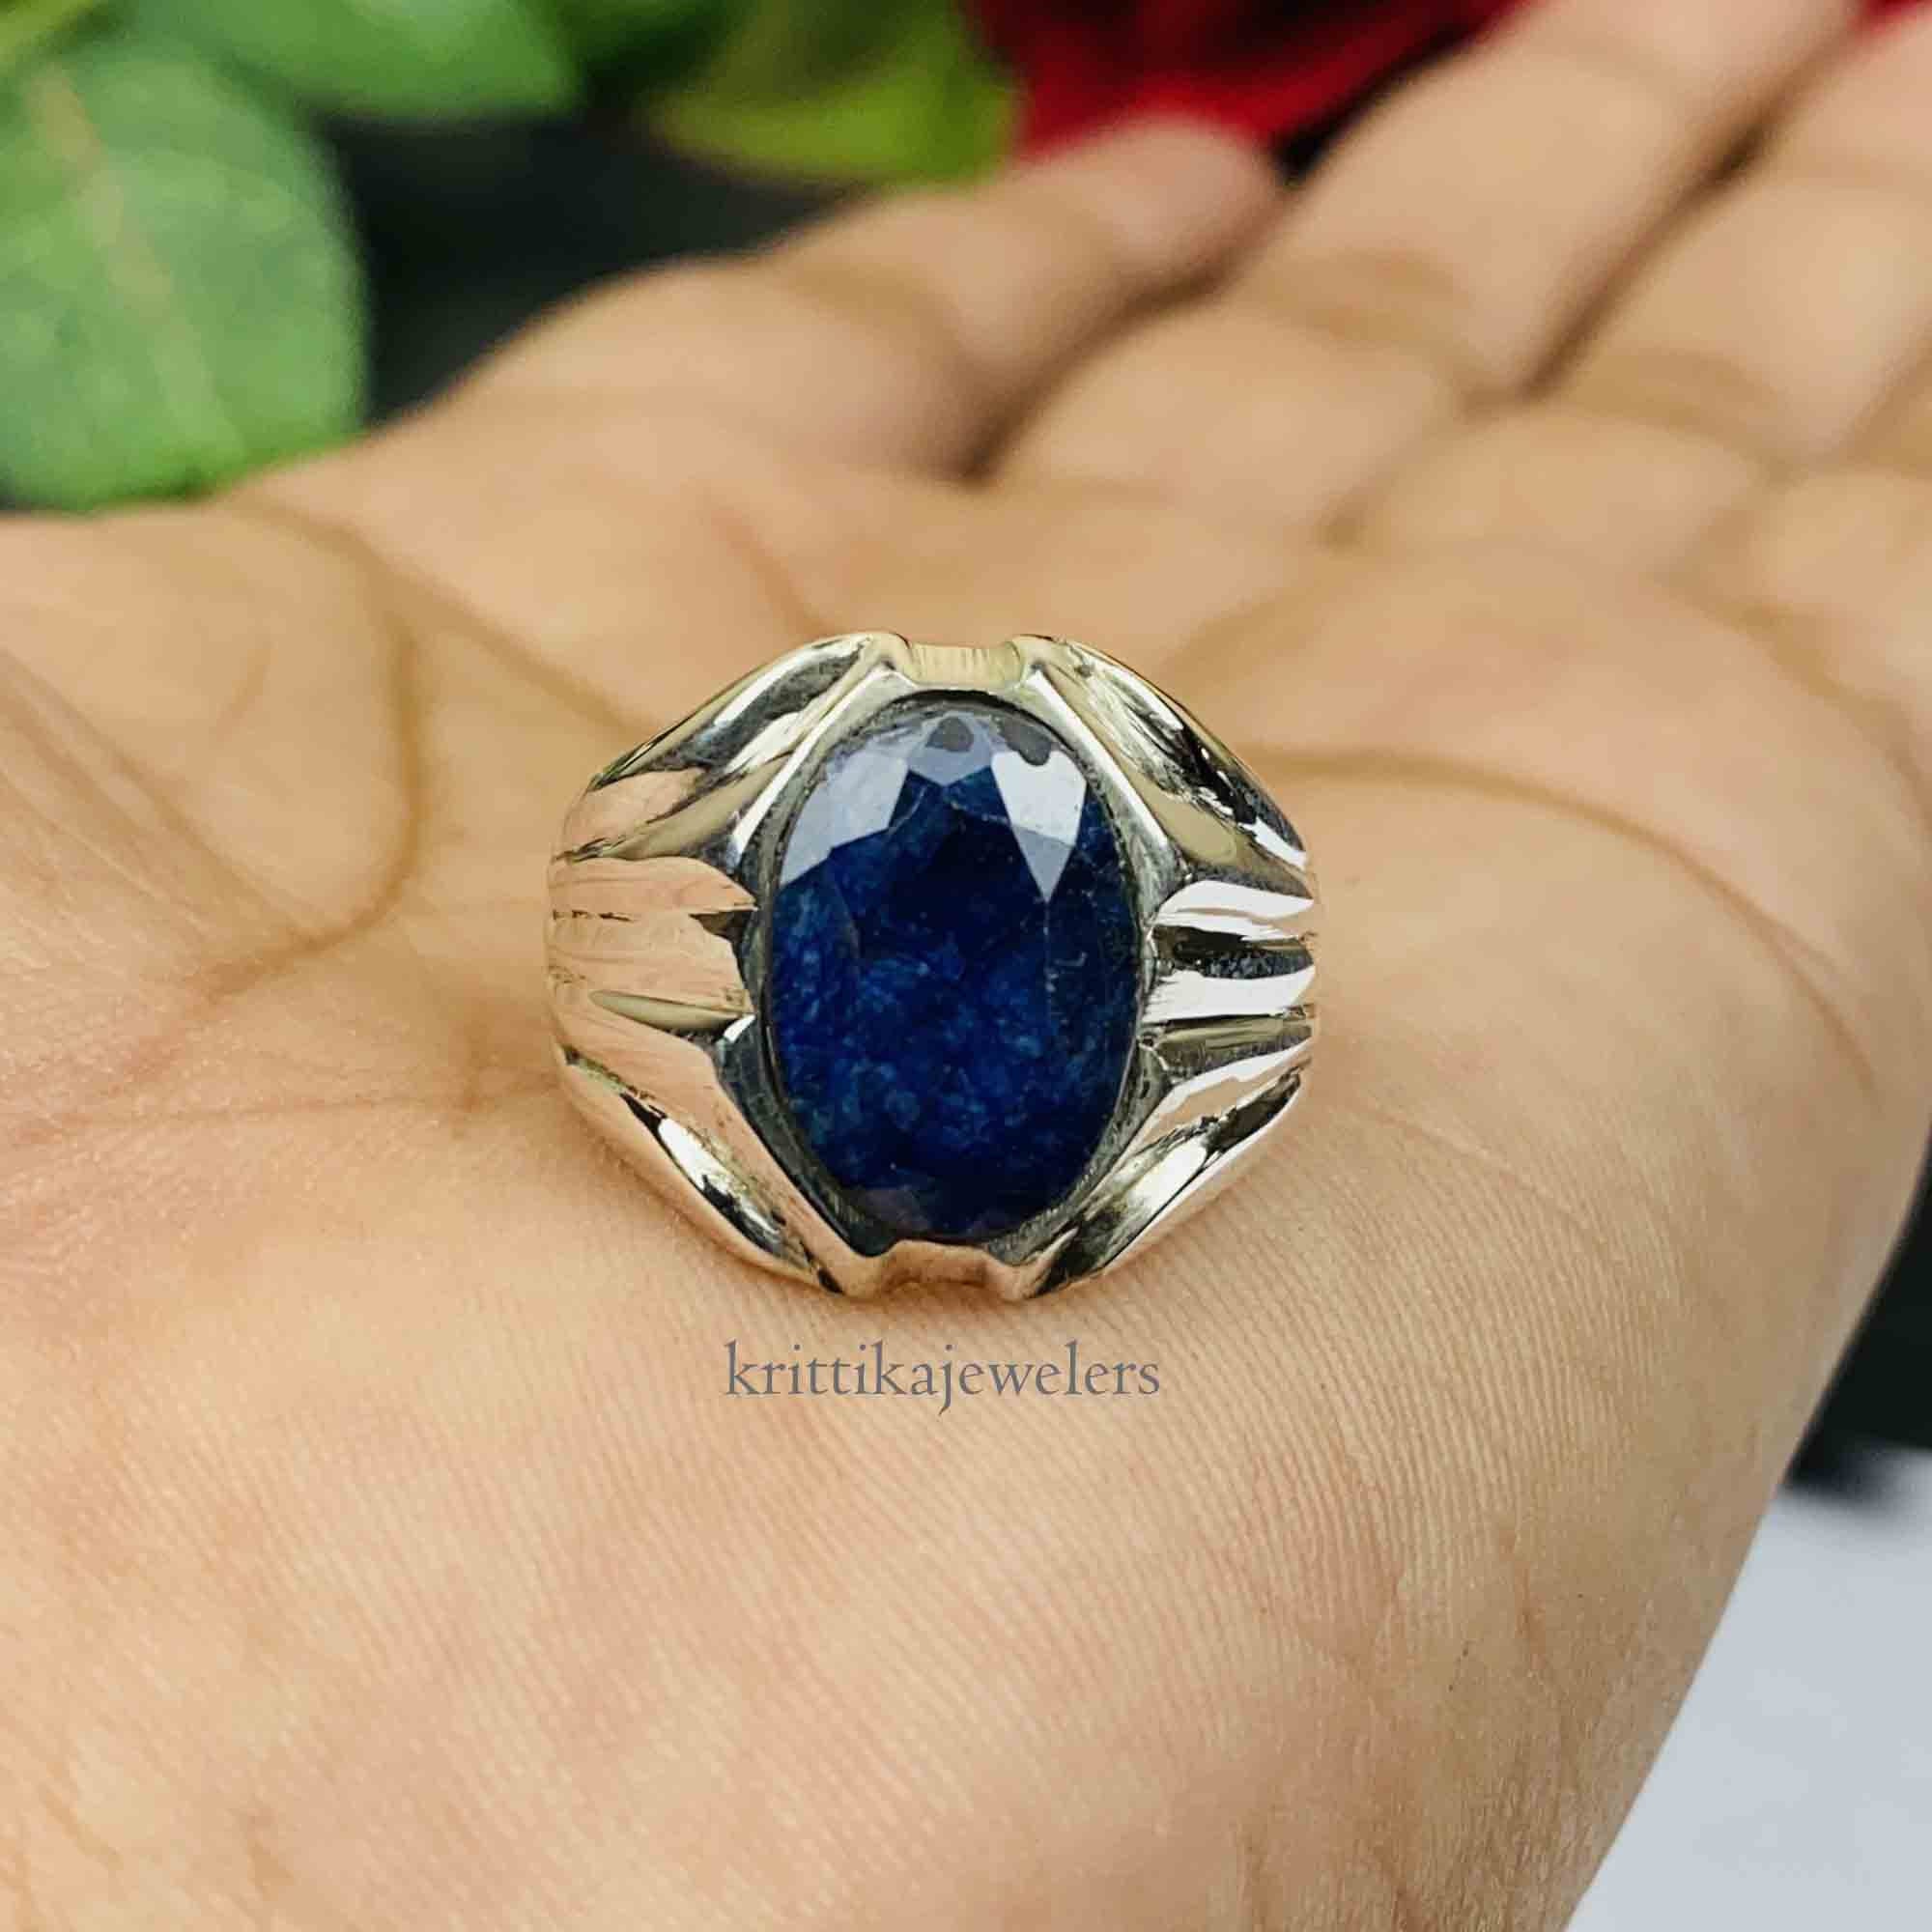 Buy Blue Sapphire (Neelam) Ring for Men-Women at Best Price